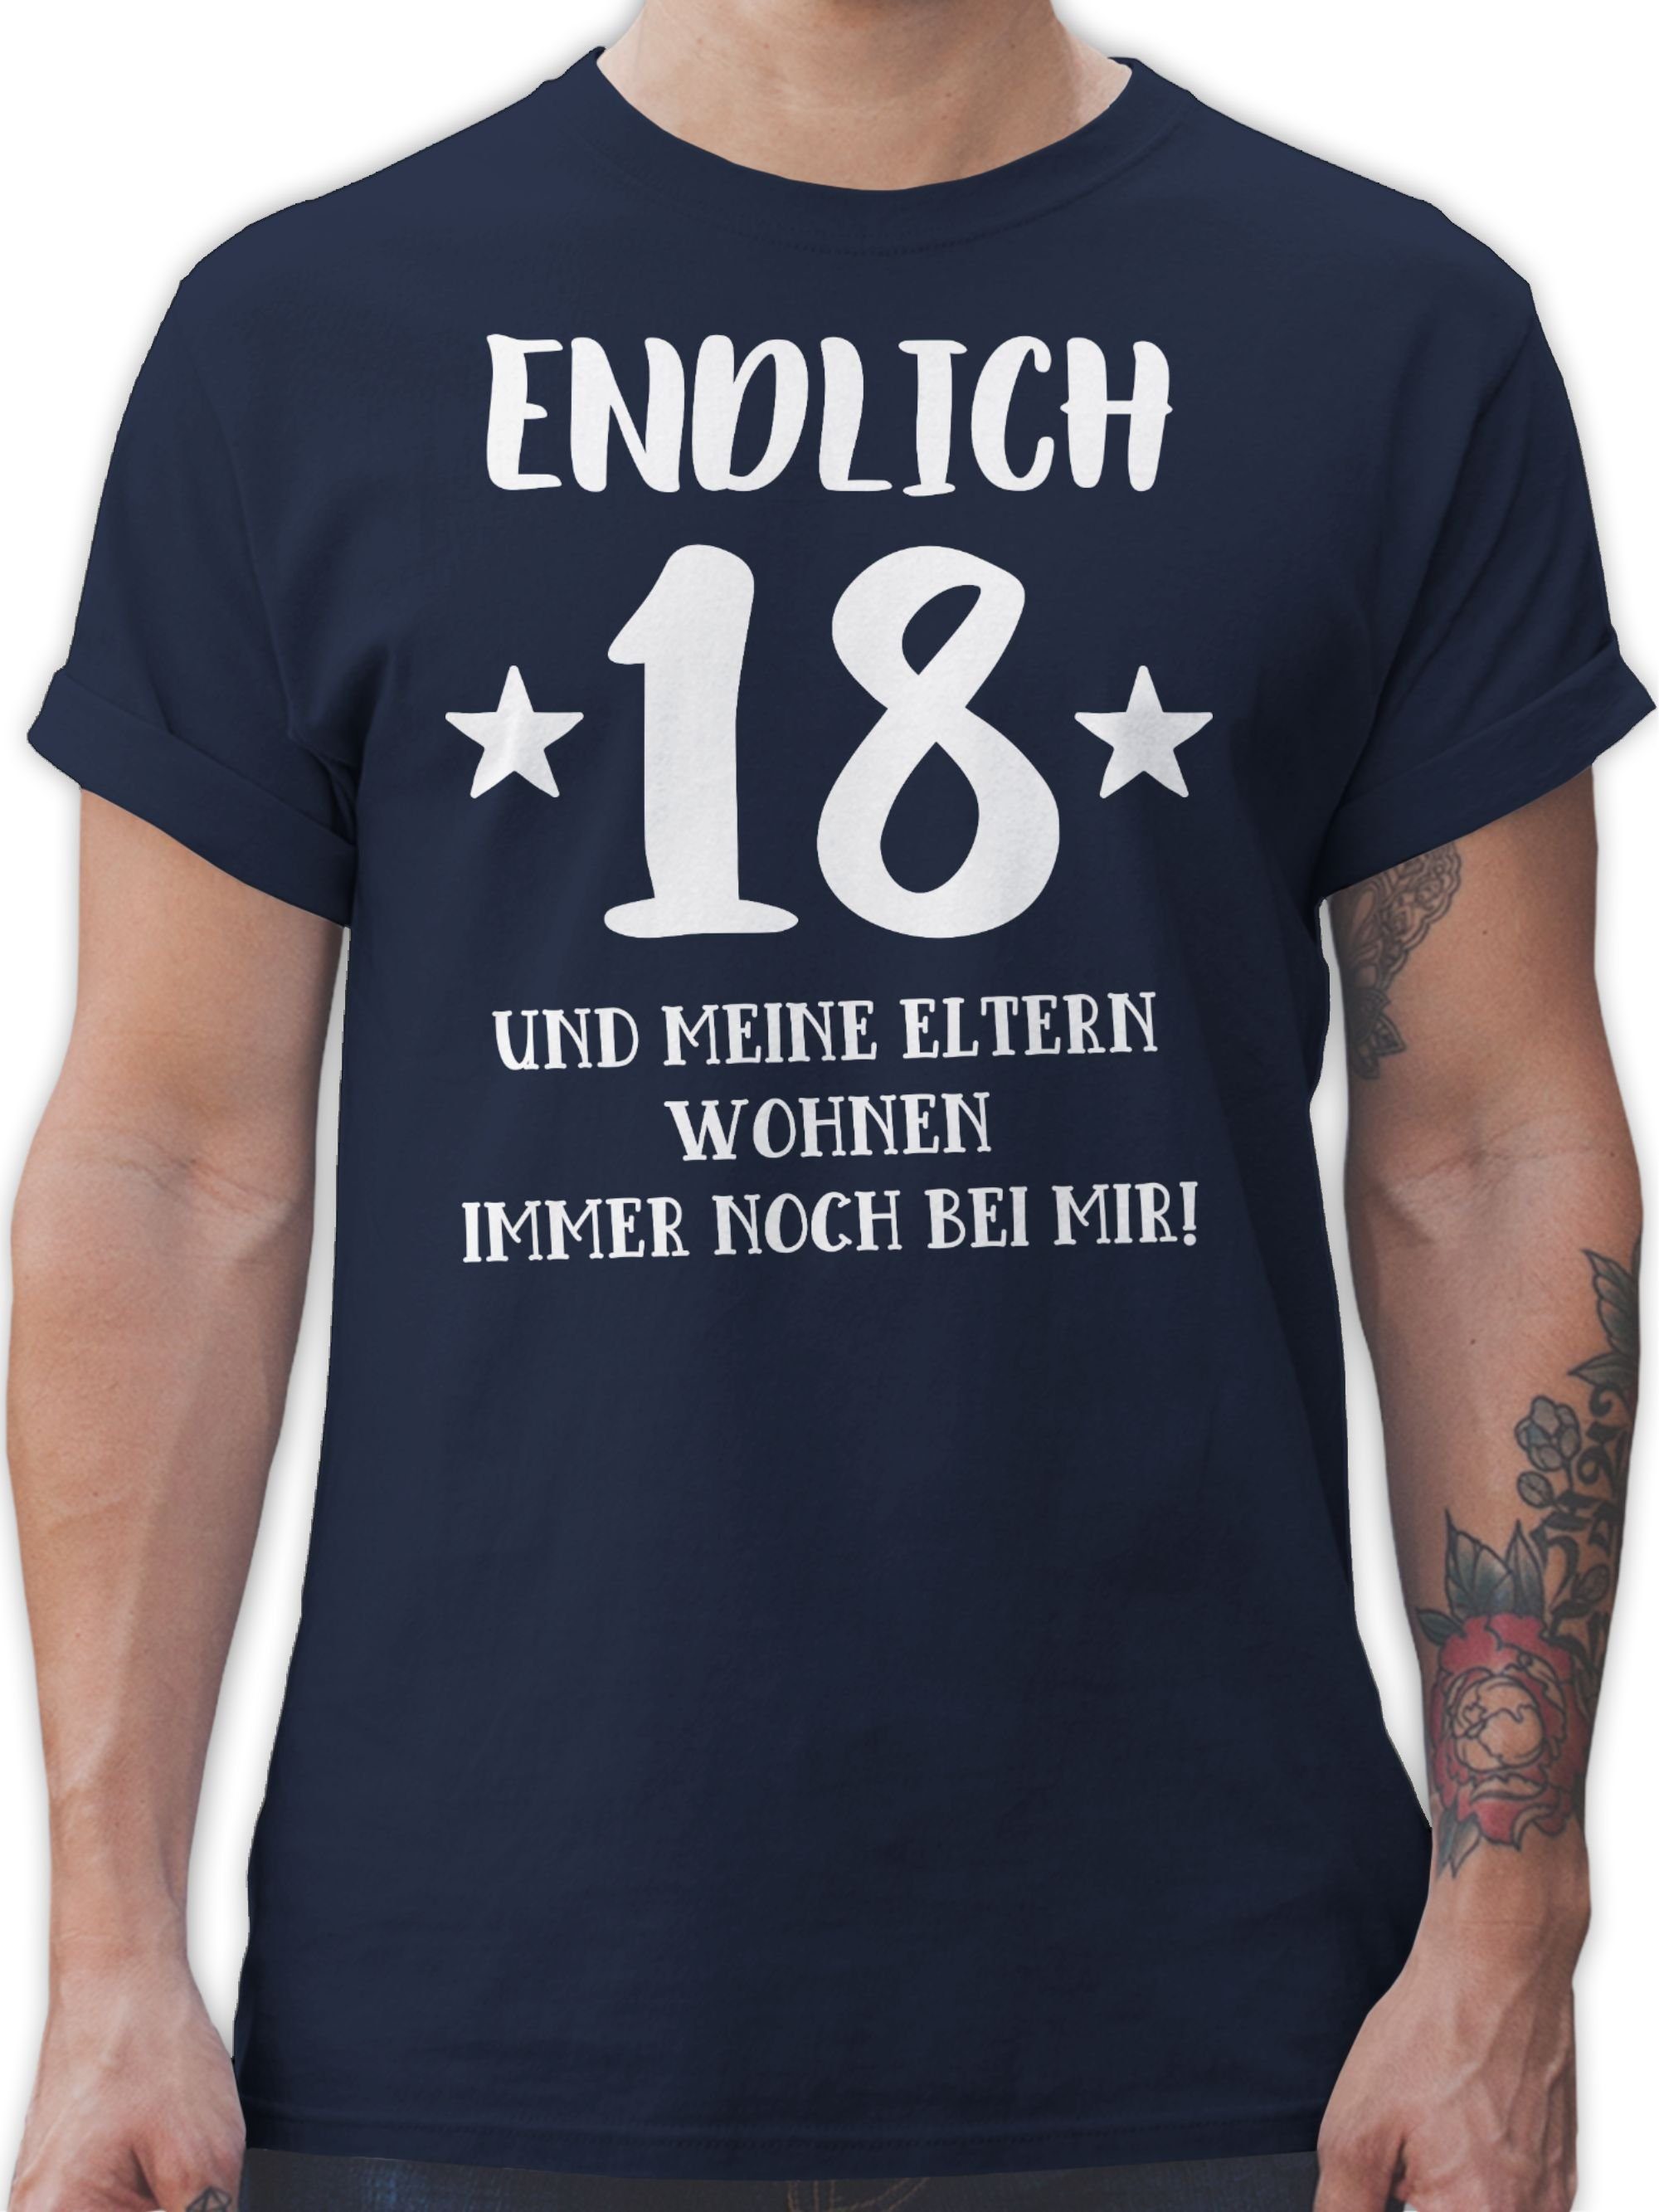 Shirtracer T-Shirt Endlich achtzehn - Eltern Wohnen bei mir 18. Geburtstag 2 Navy Blau